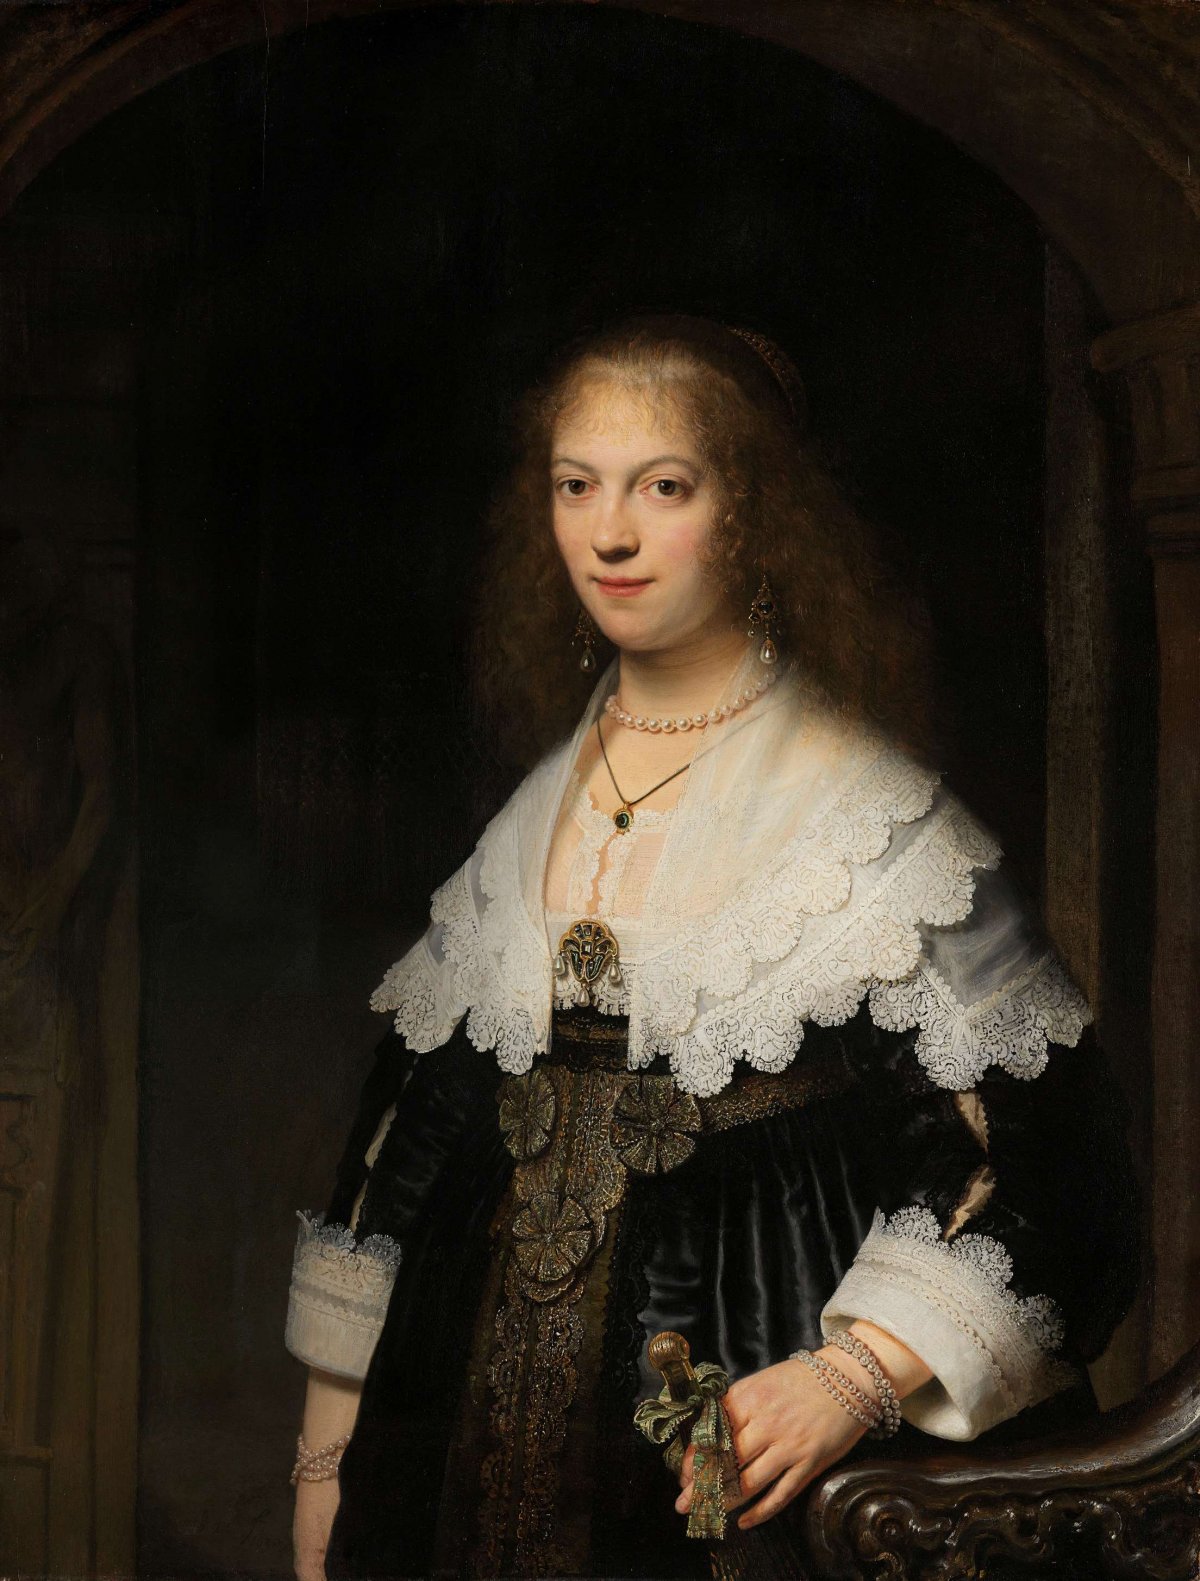 Portrait of a Woman, Possibly Maria Trip, Rembrandt van Rijn, 1639